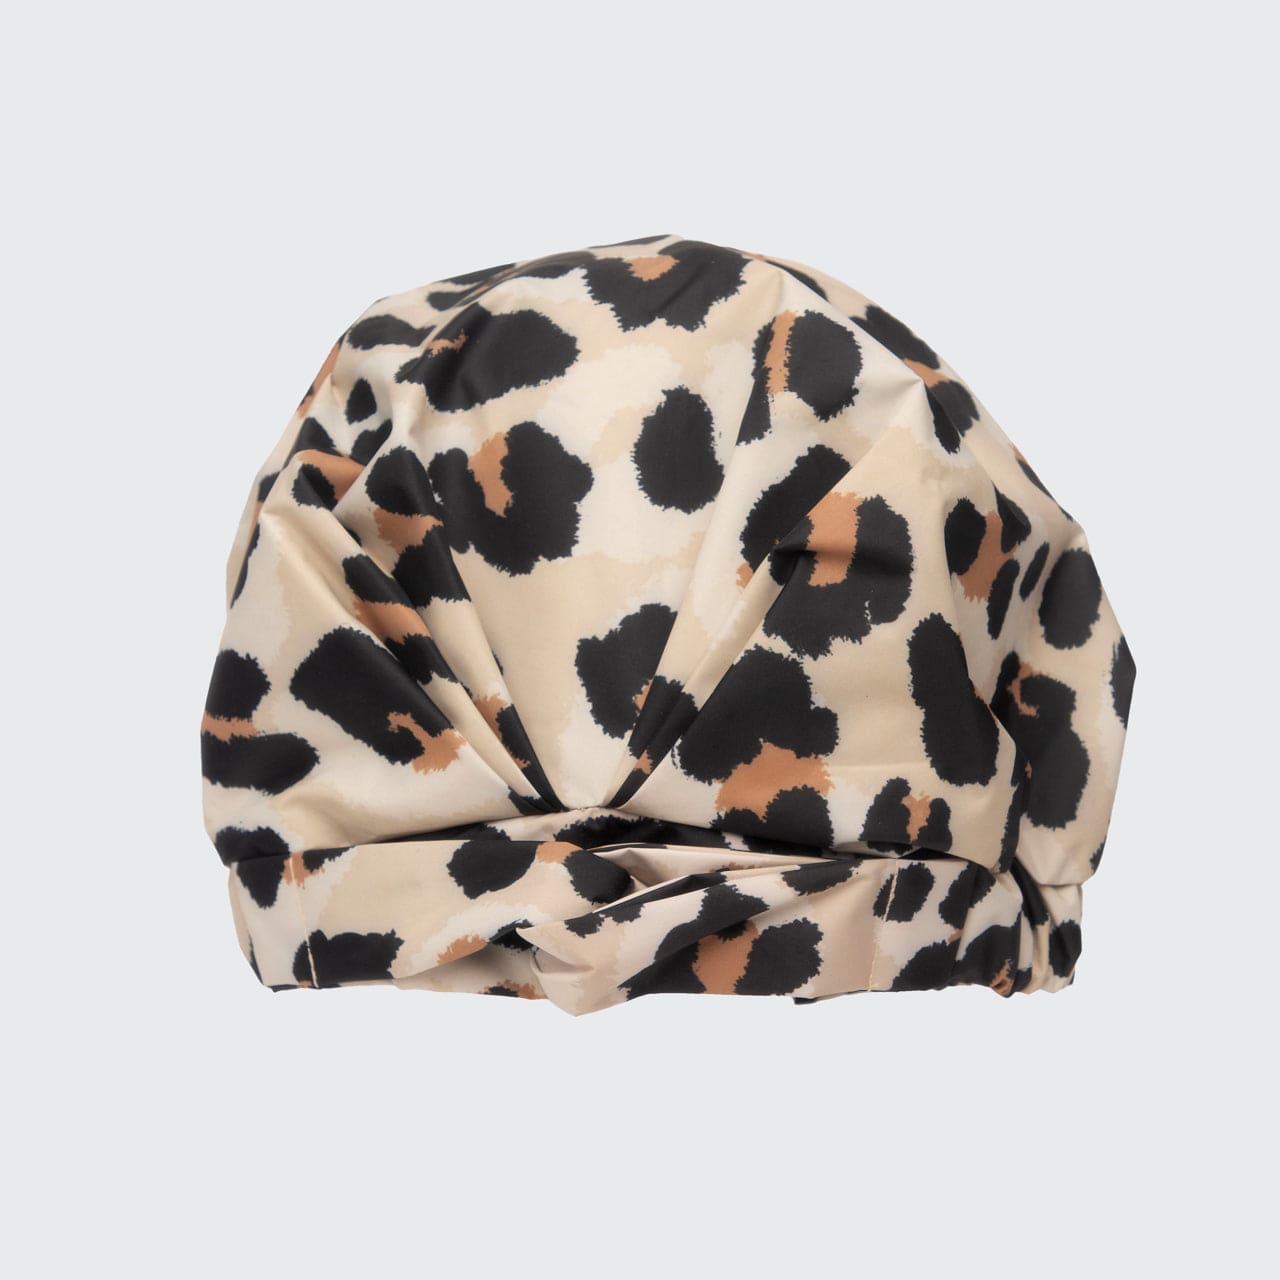 Luxe Leopard Shower Cap & Hair Towel Bundle